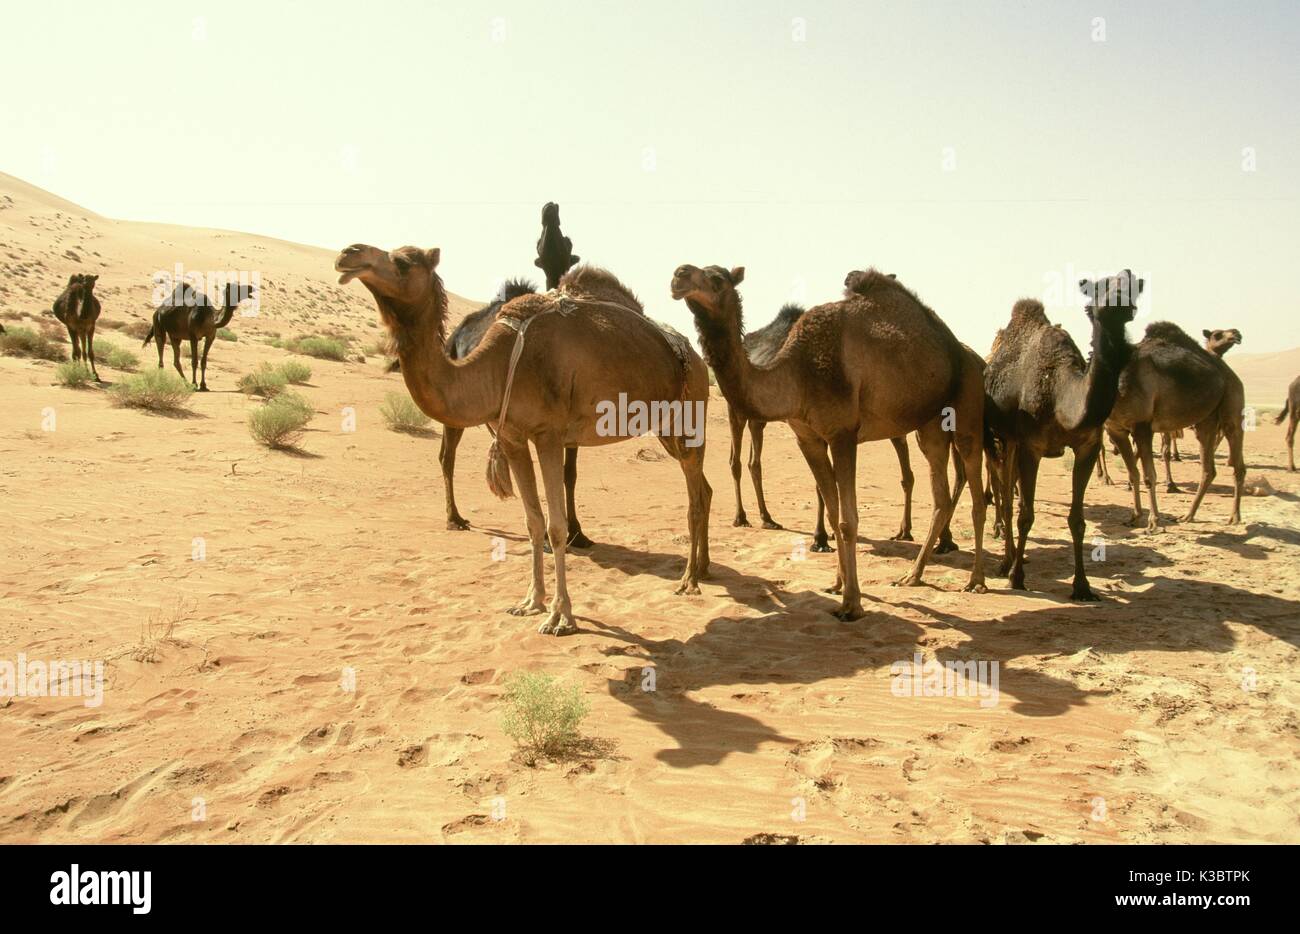 Kamele in der Nähe der Shaybah Gas öl Luftzerlegungsanlage (gosp), eine große Gas-, Öl- und Produktionsstätte in das Leere Viertel Wüste Saudi Arabiens, in der Nähe der Grenze zu den Vereinigten Arabischen Emiraten. Stockfoto